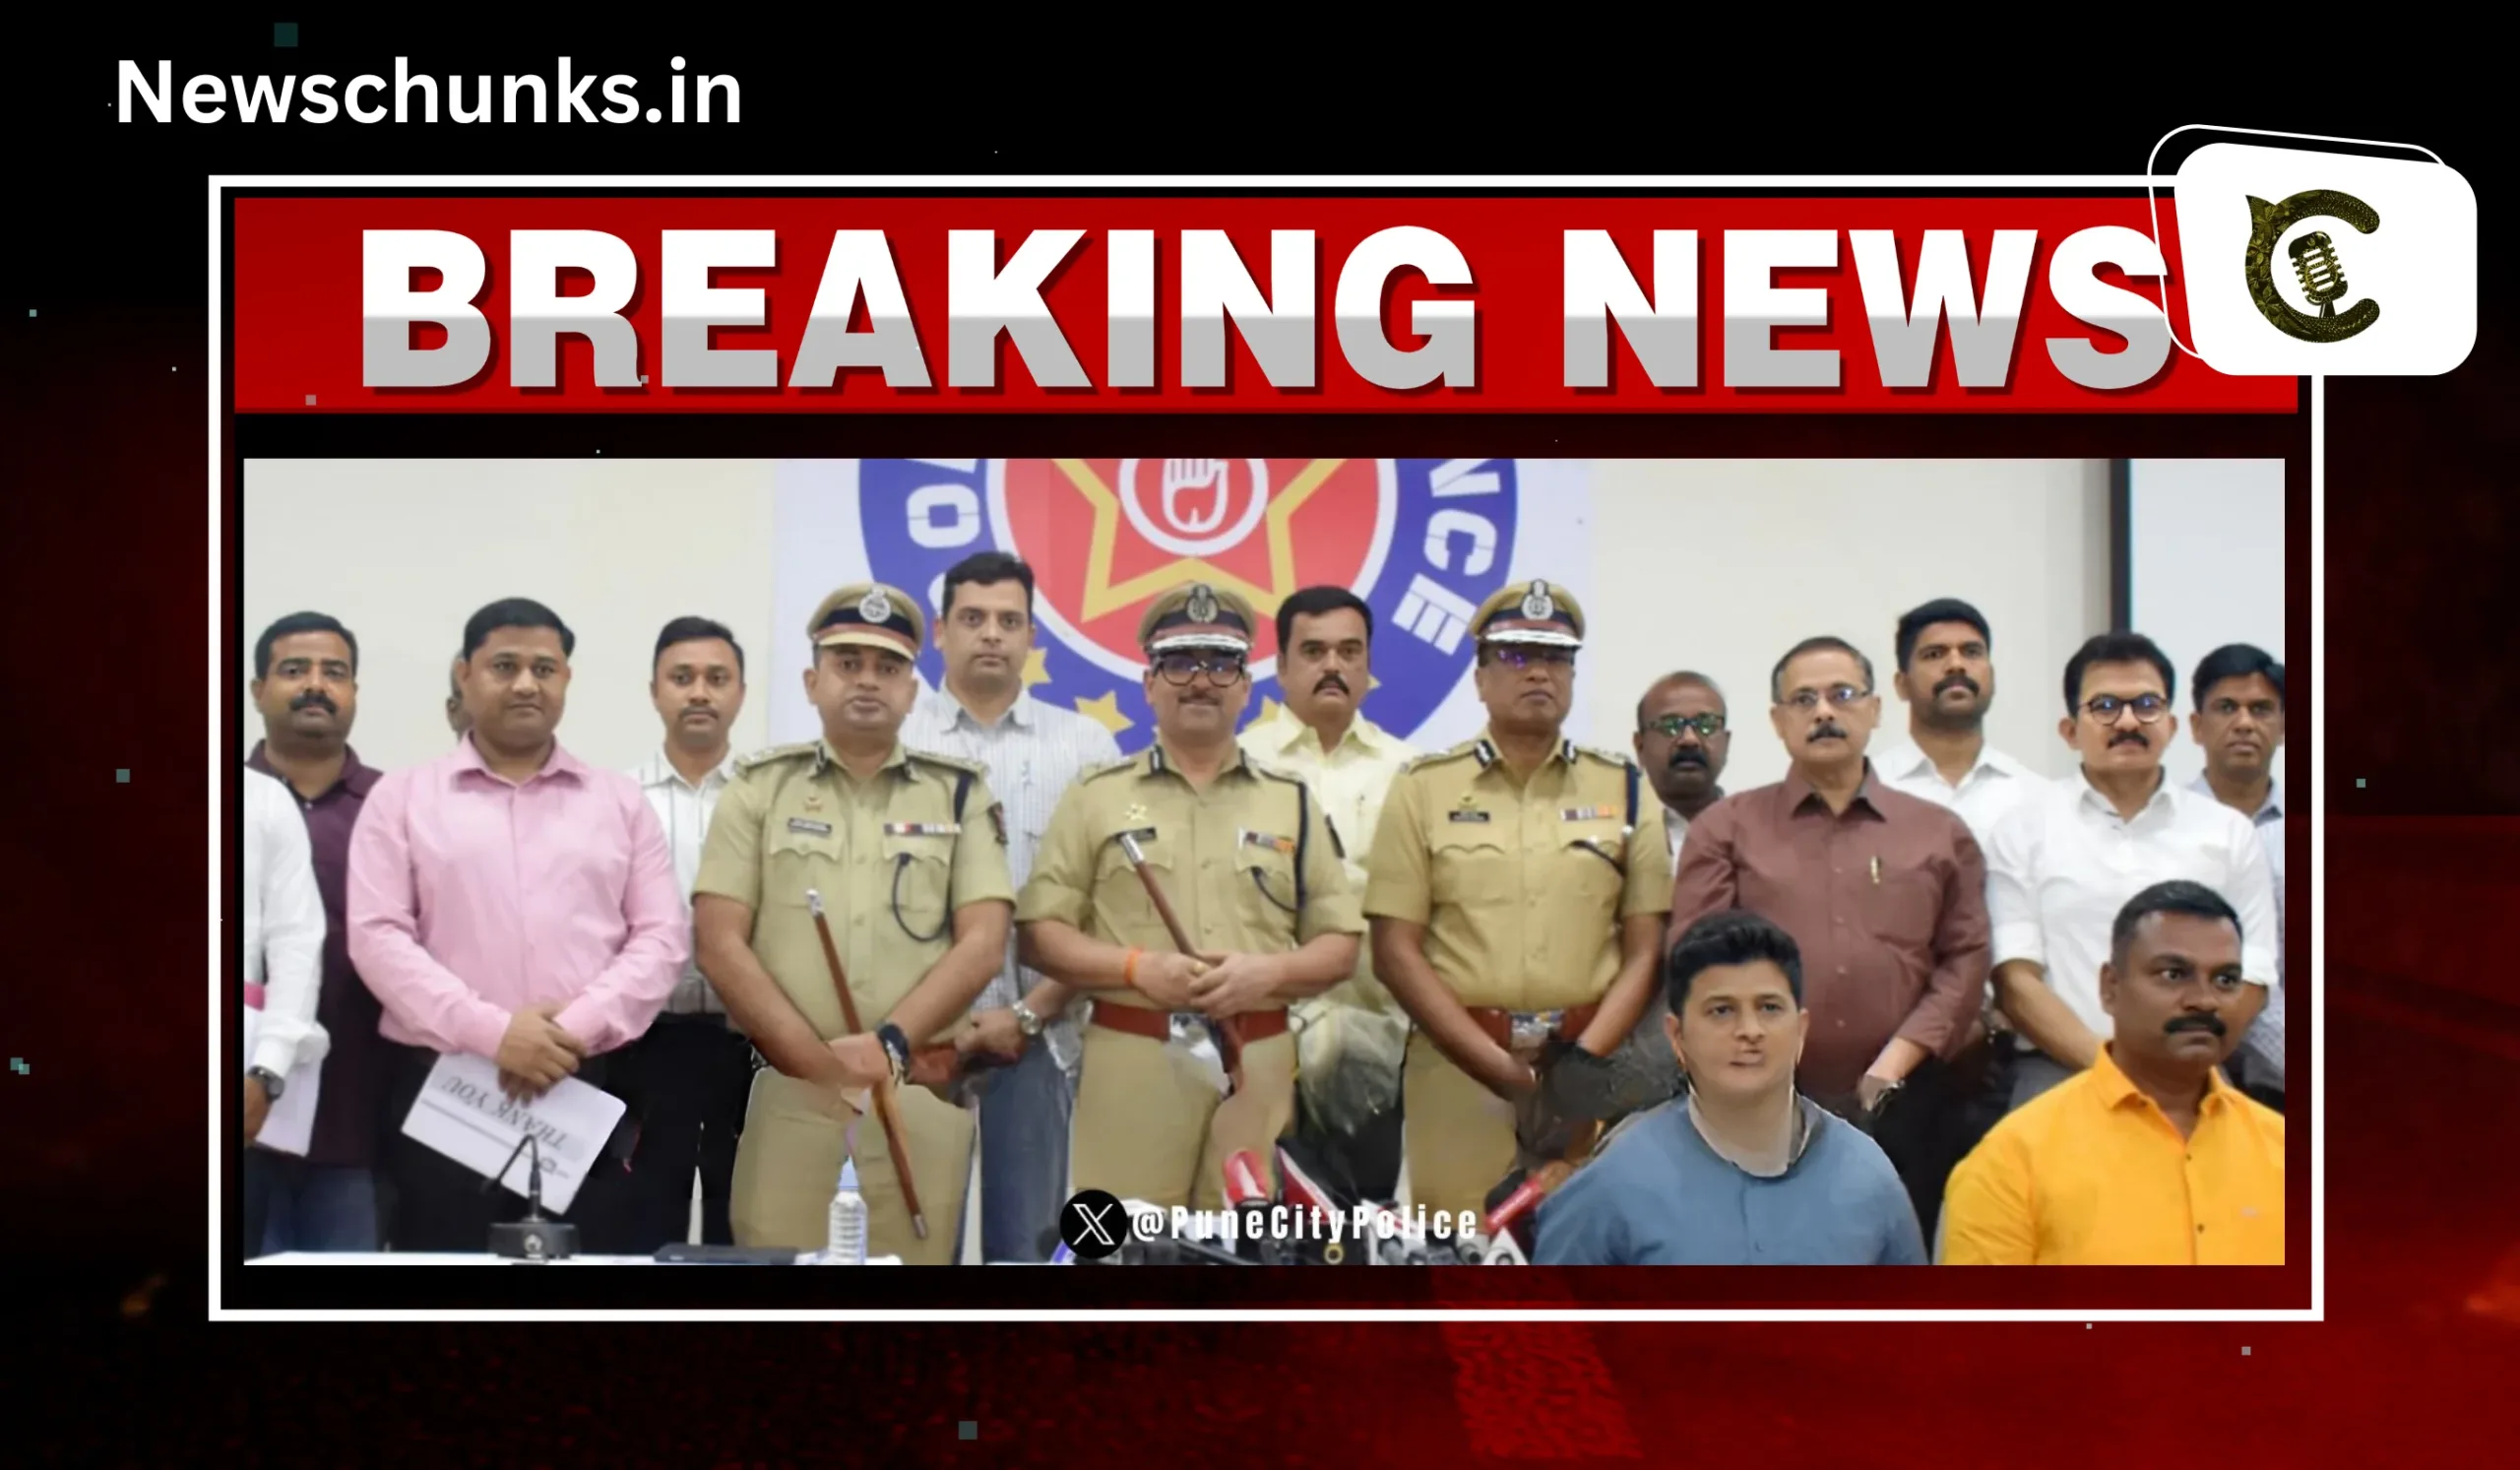 Pune police caught drugs worth Rs 1000 crore: दिल्ली के हौजखास में पकड़ी गई 1000 करोड़ की ड्रग्स, पुणे पुलिस ने की छापेमारी